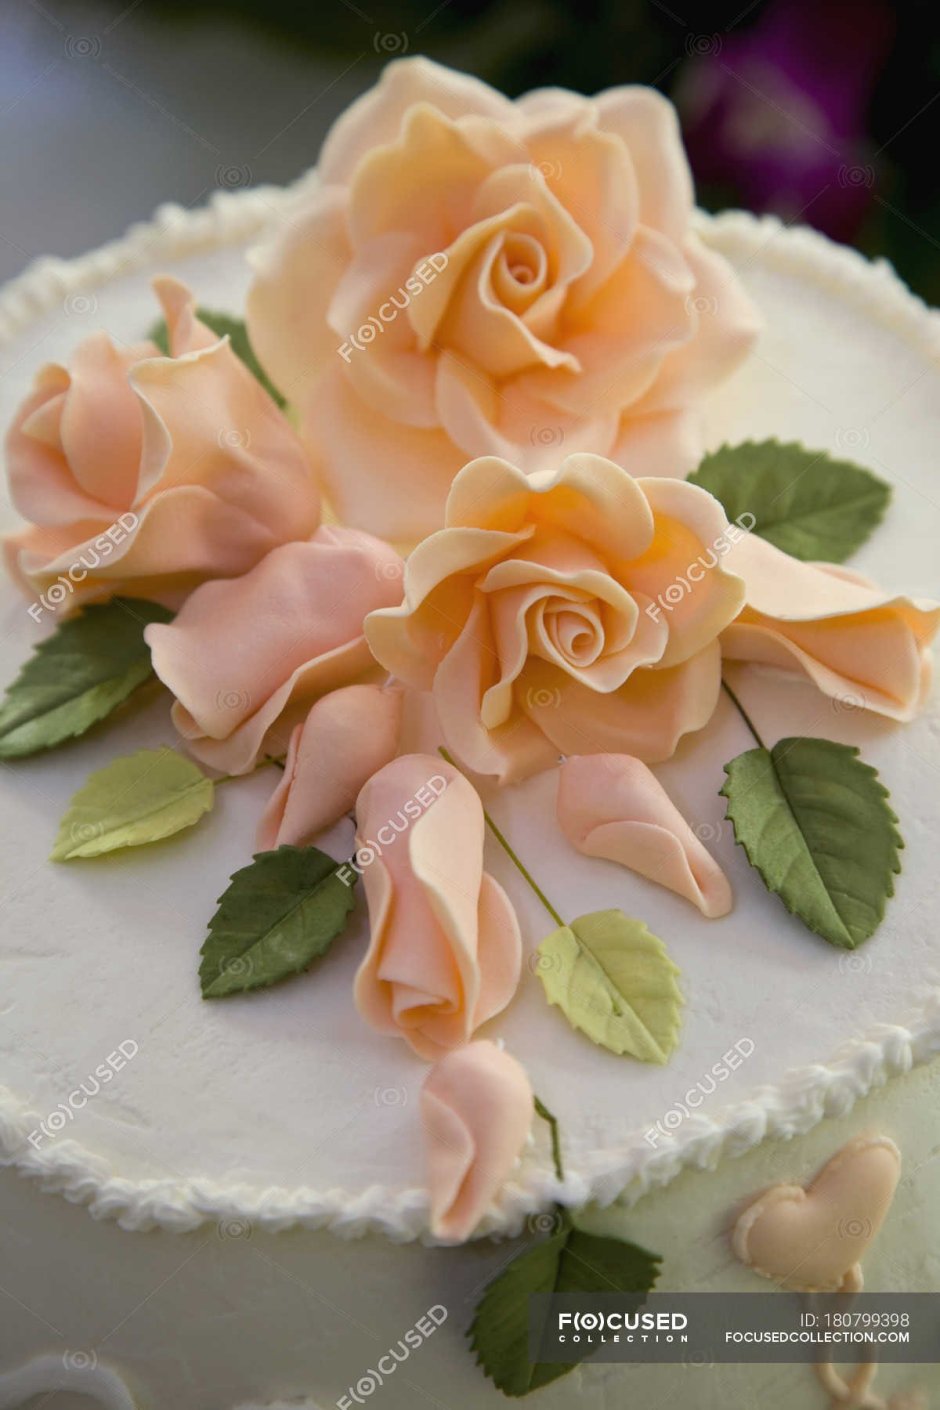 Украшение торта розами из мастики